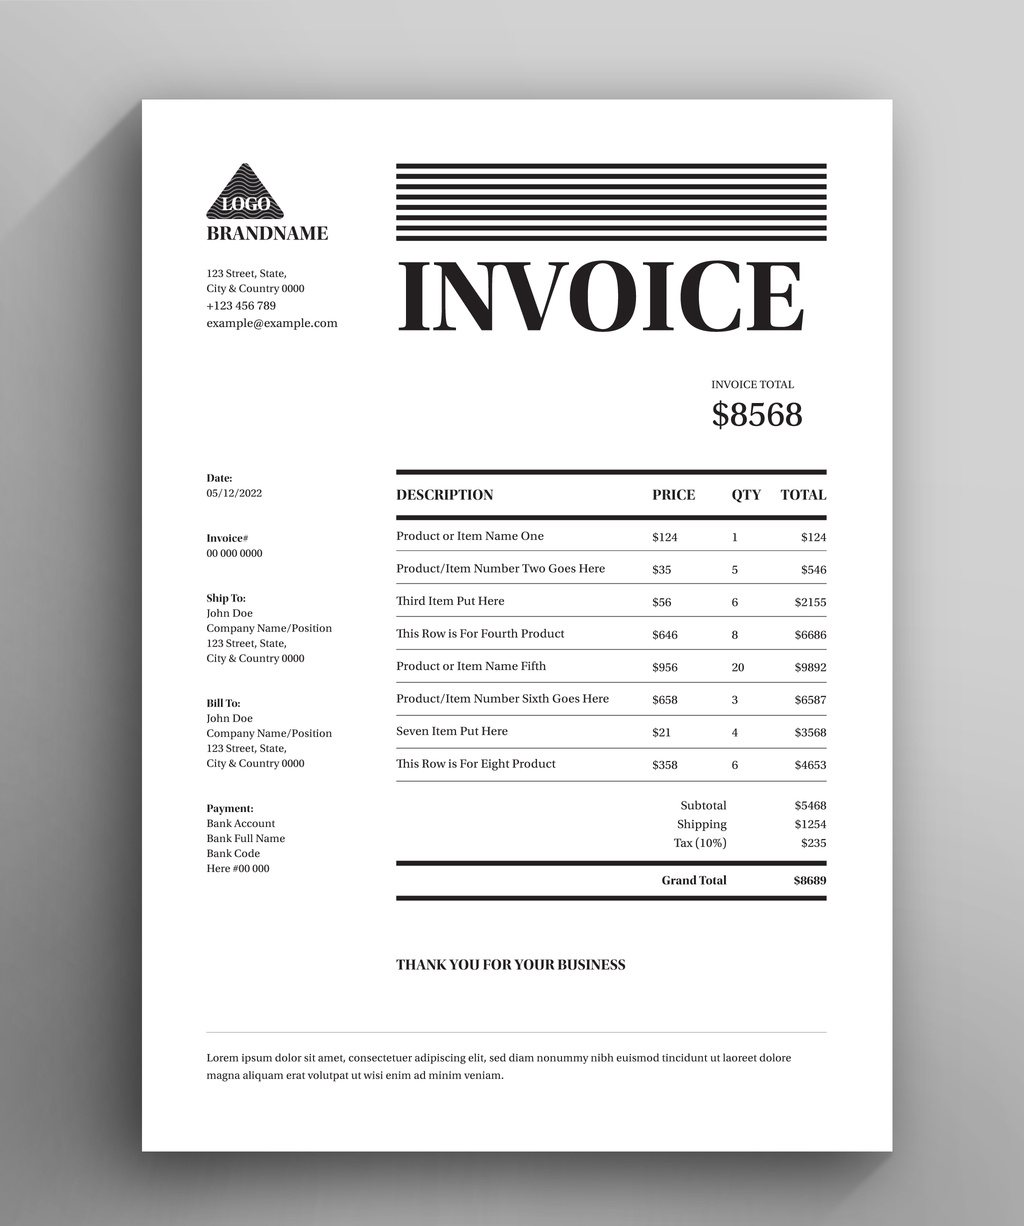 Company Invoice Layout (AI Format)